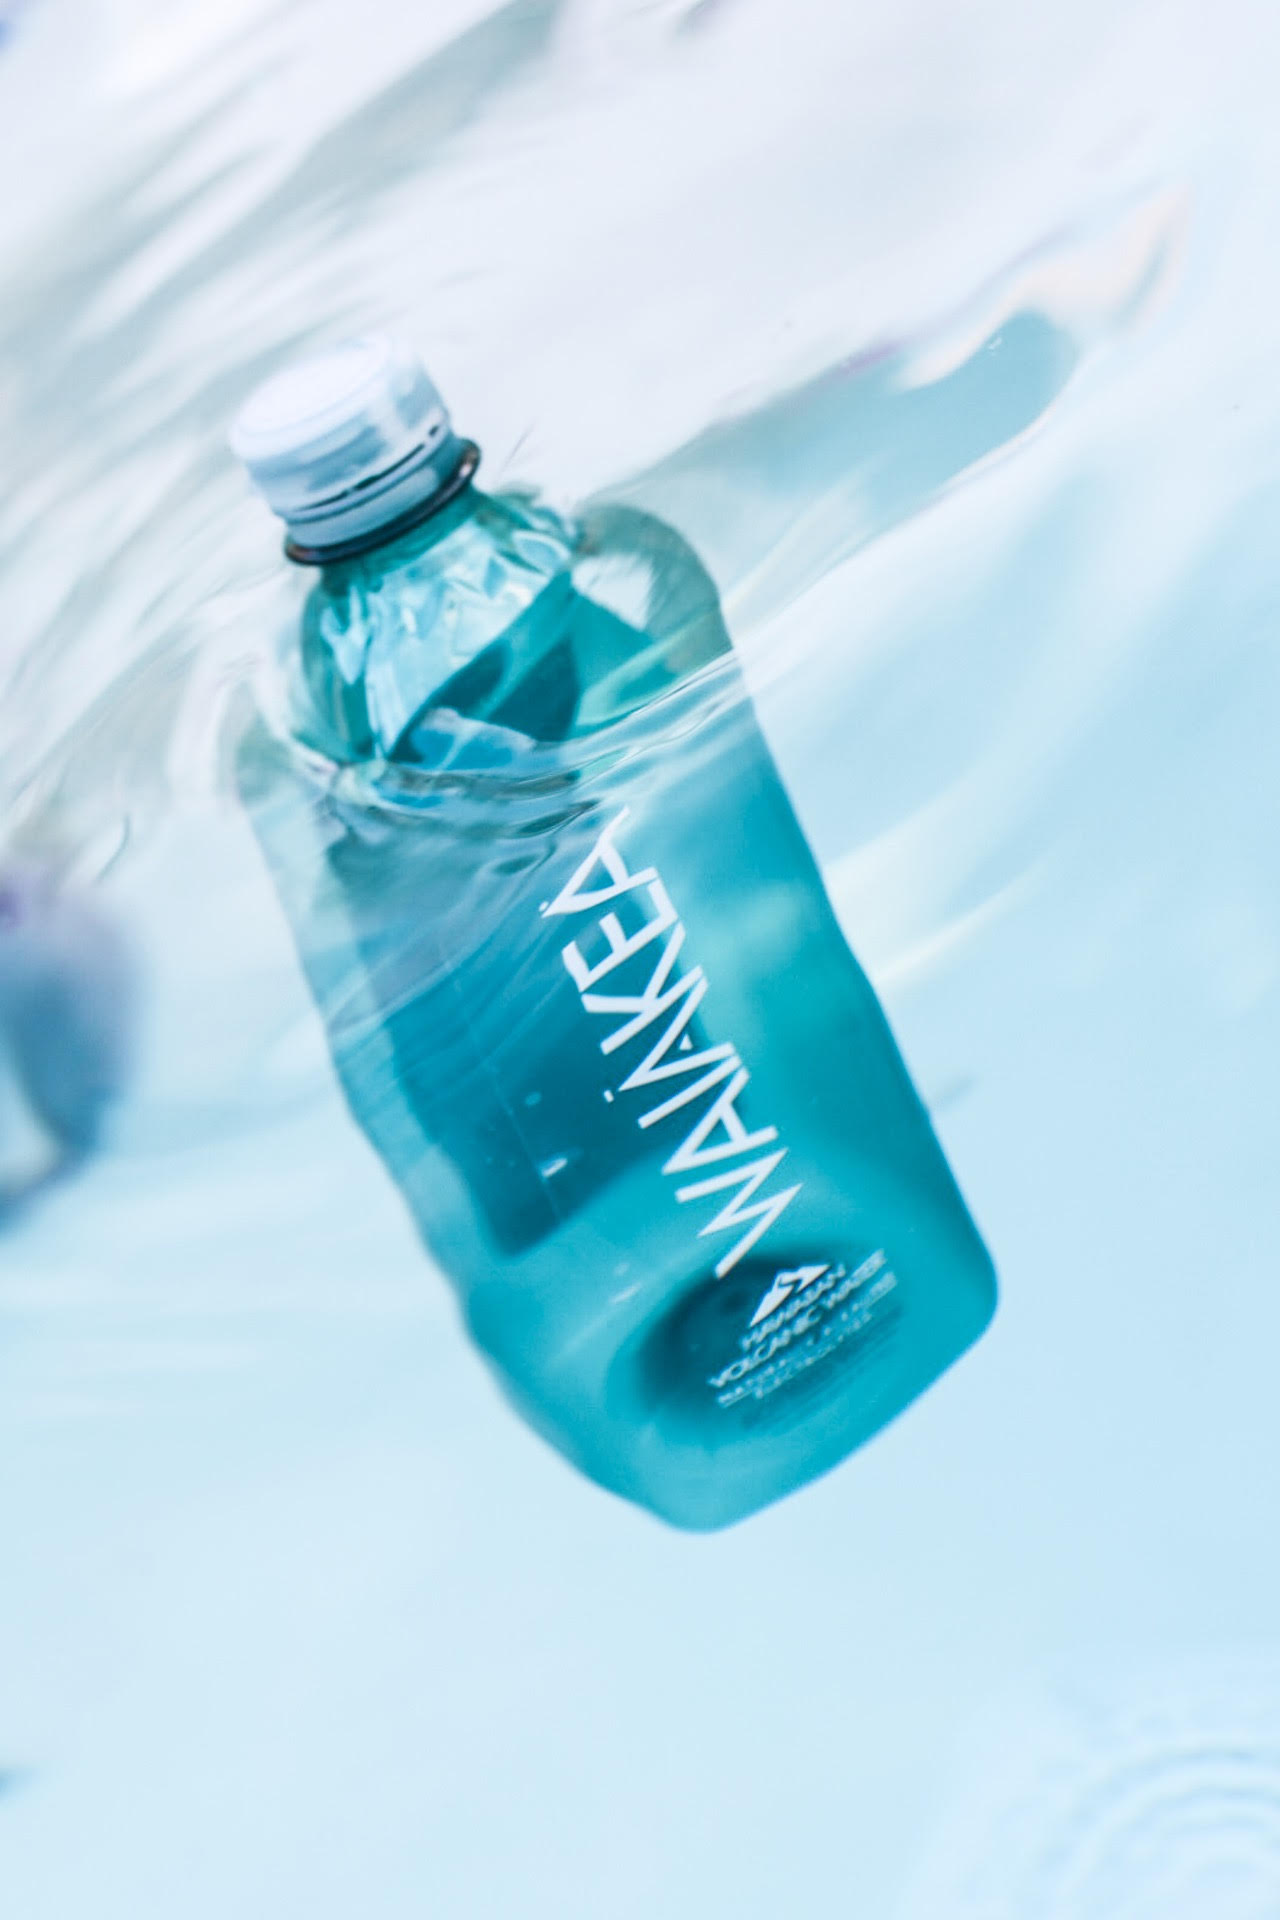 awa water bottle